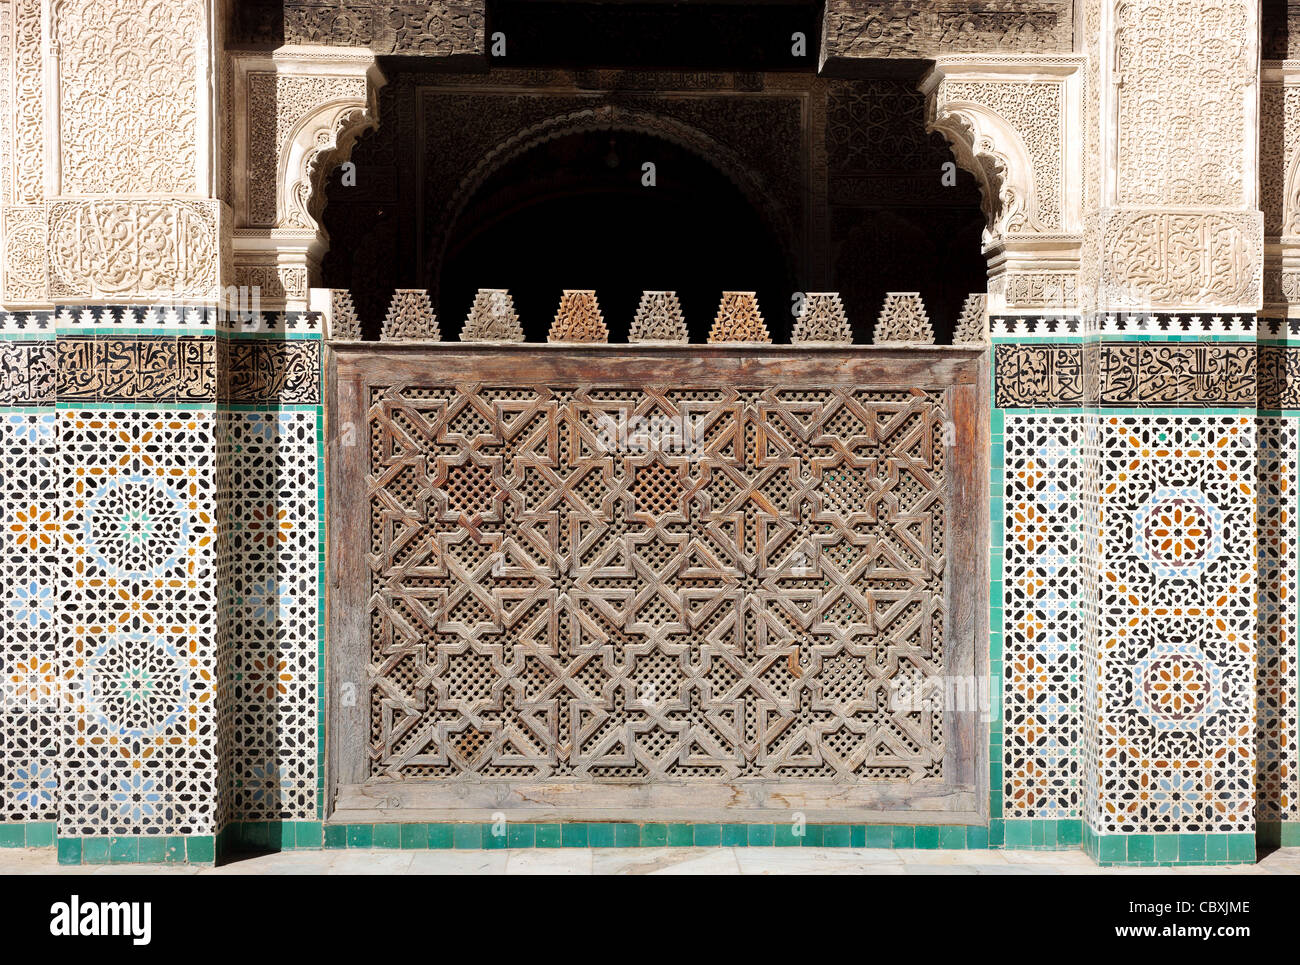 'Ali Ben' Youssuf Madressa (école coranique) à Marrakech. Le Maroc. Banque D'Images